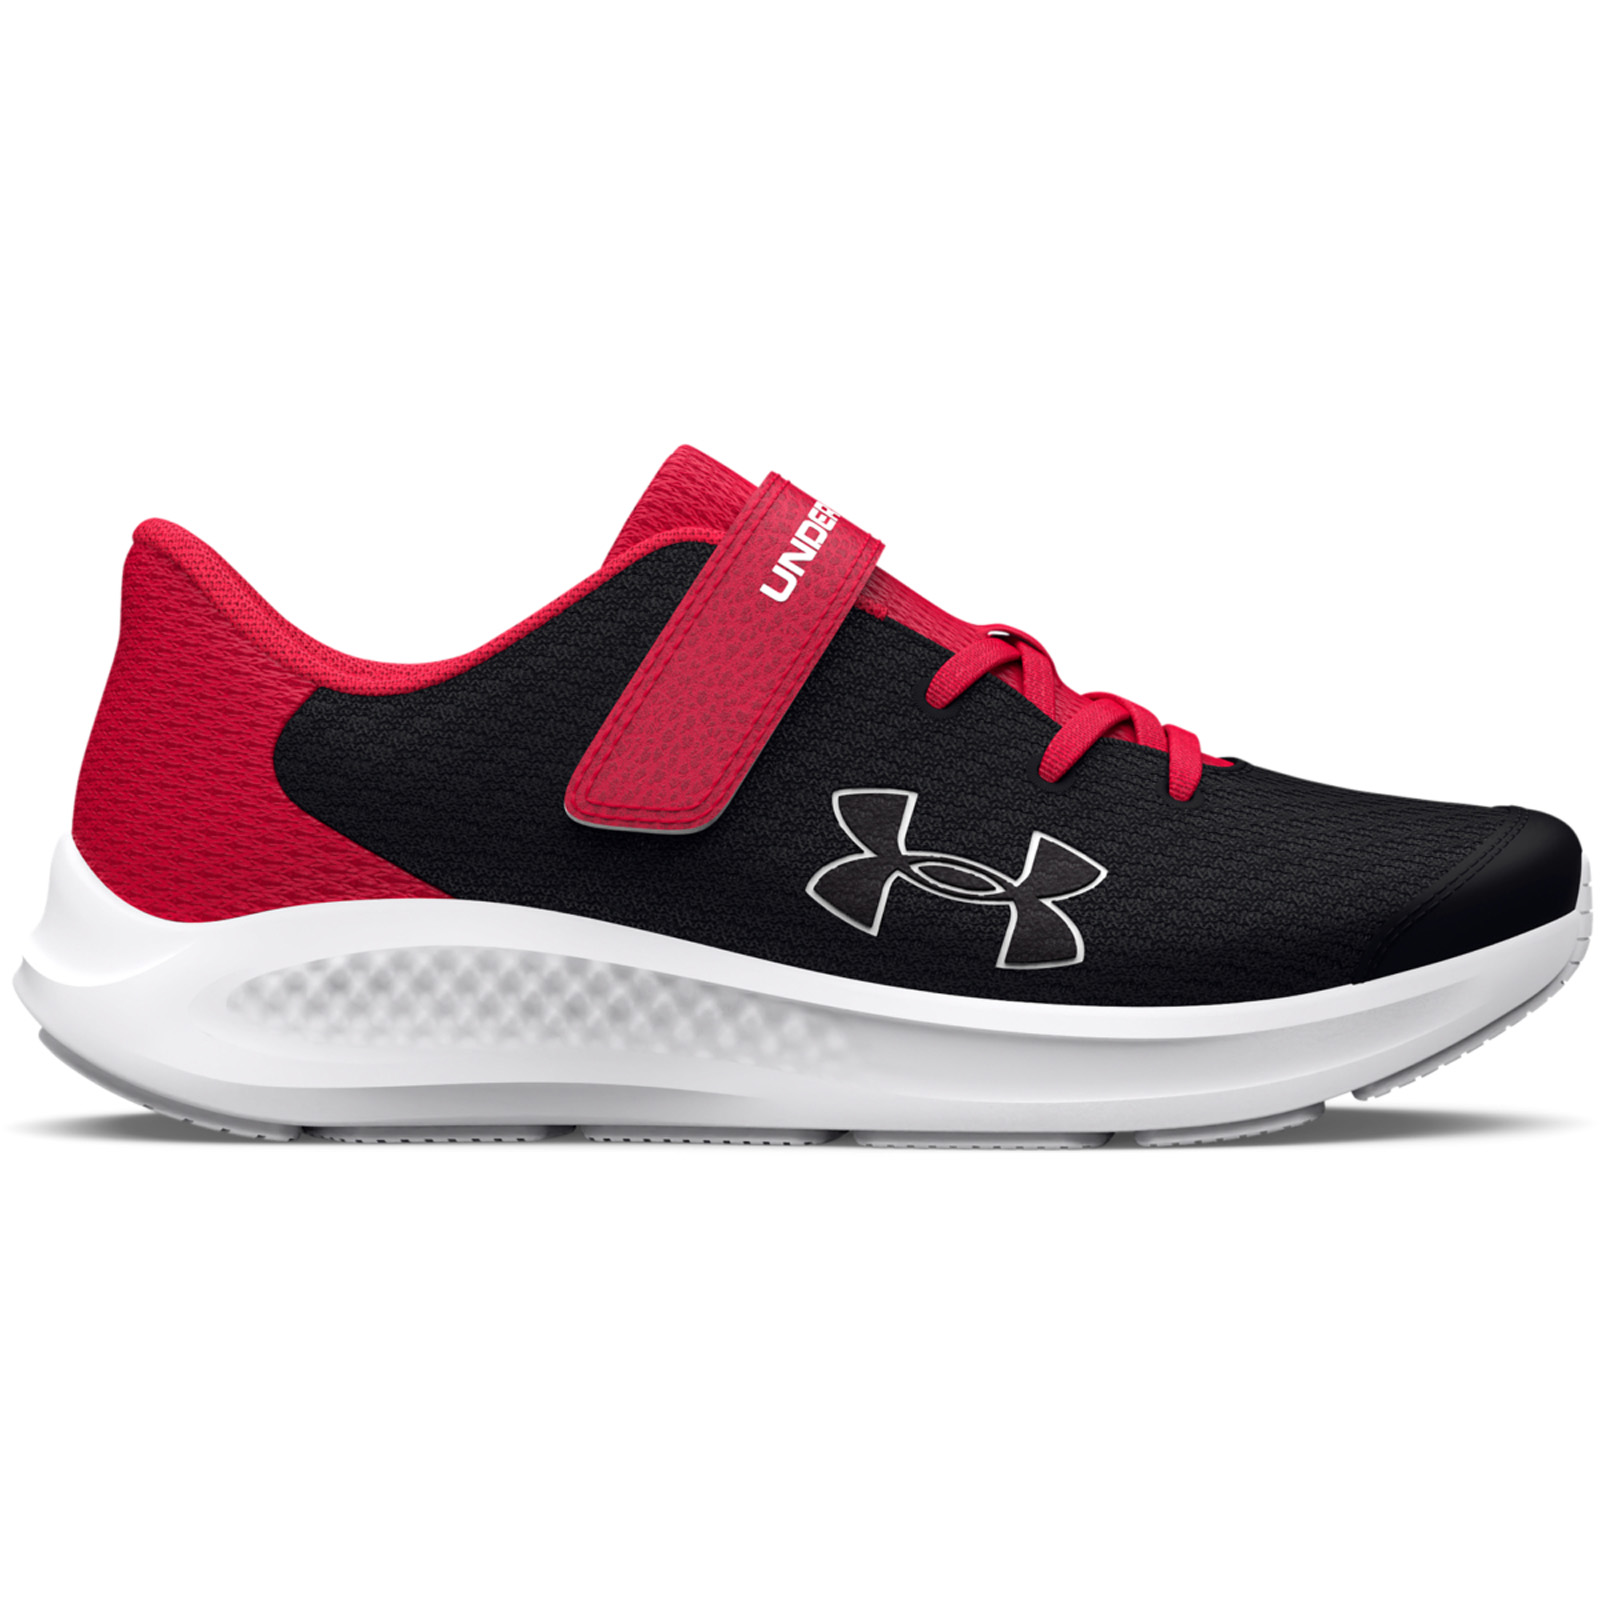 Παιδικά > Παπούτσια > Αθλητικά > Παπούτσι Low Cut Under Armour - Boys' Pre-School UA Pursuit 3 AC Big Logo Running Shoes - Black/Red/White